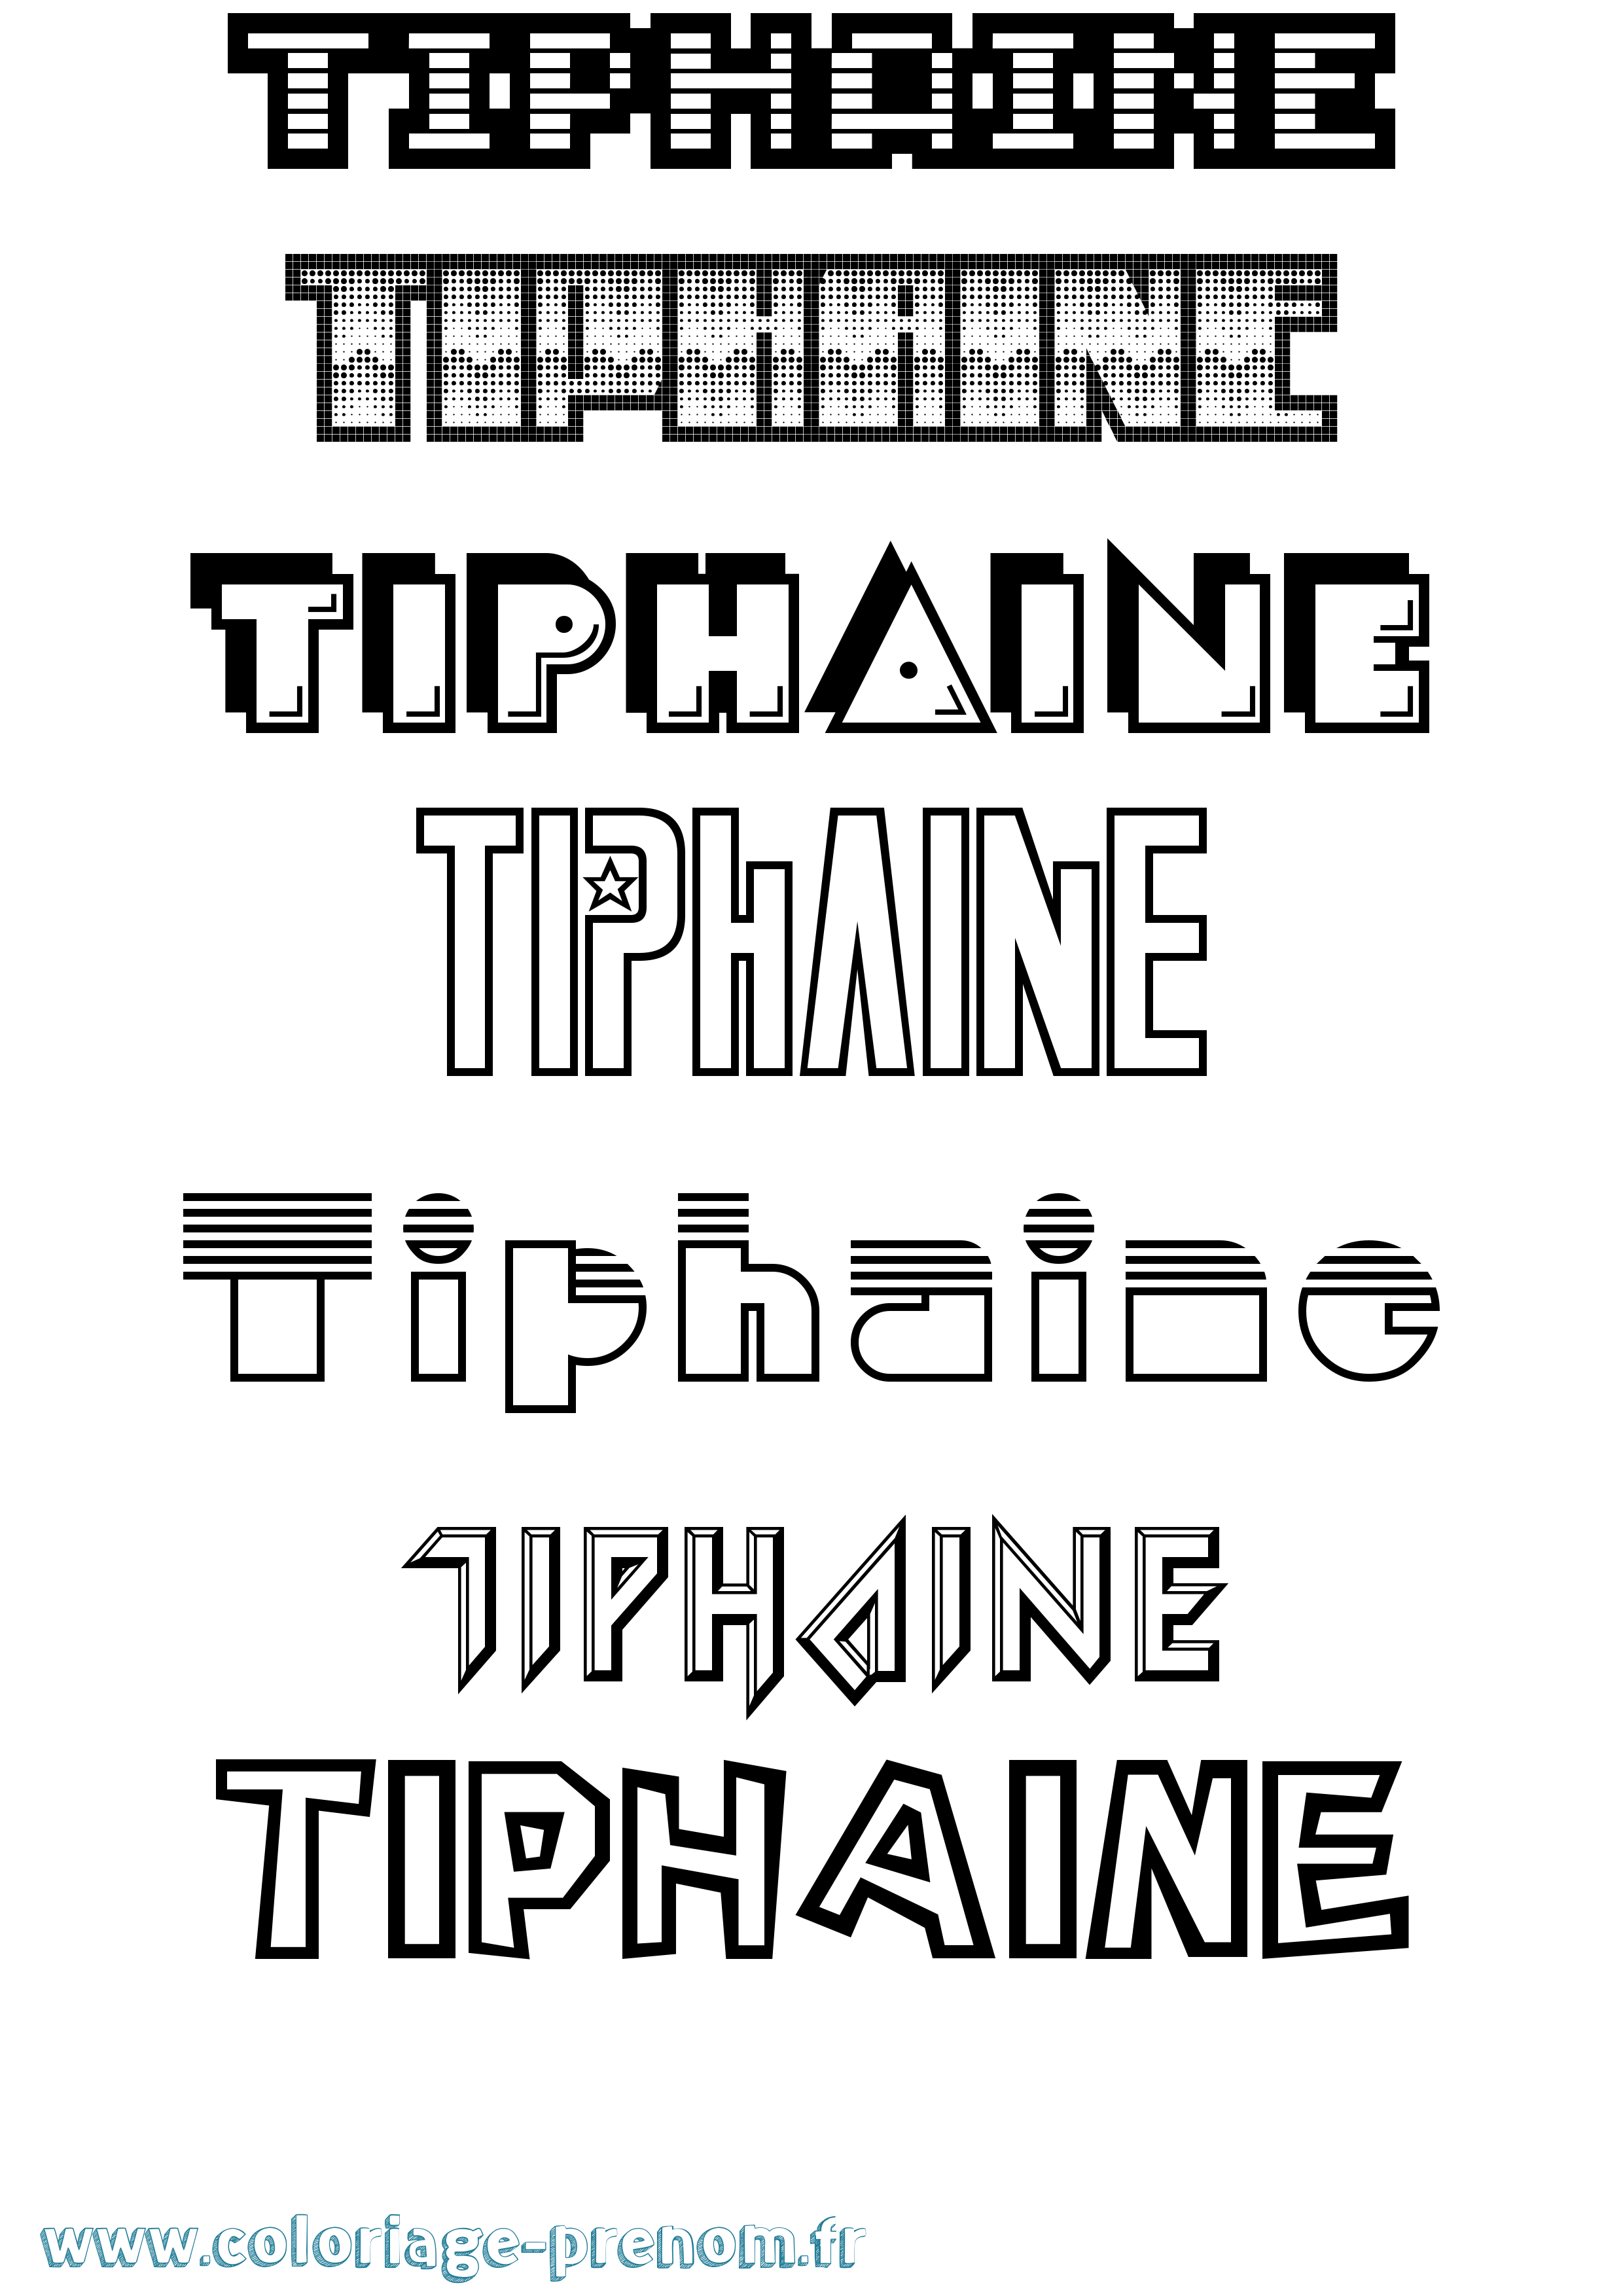 Coloriage prénom Tiphaine